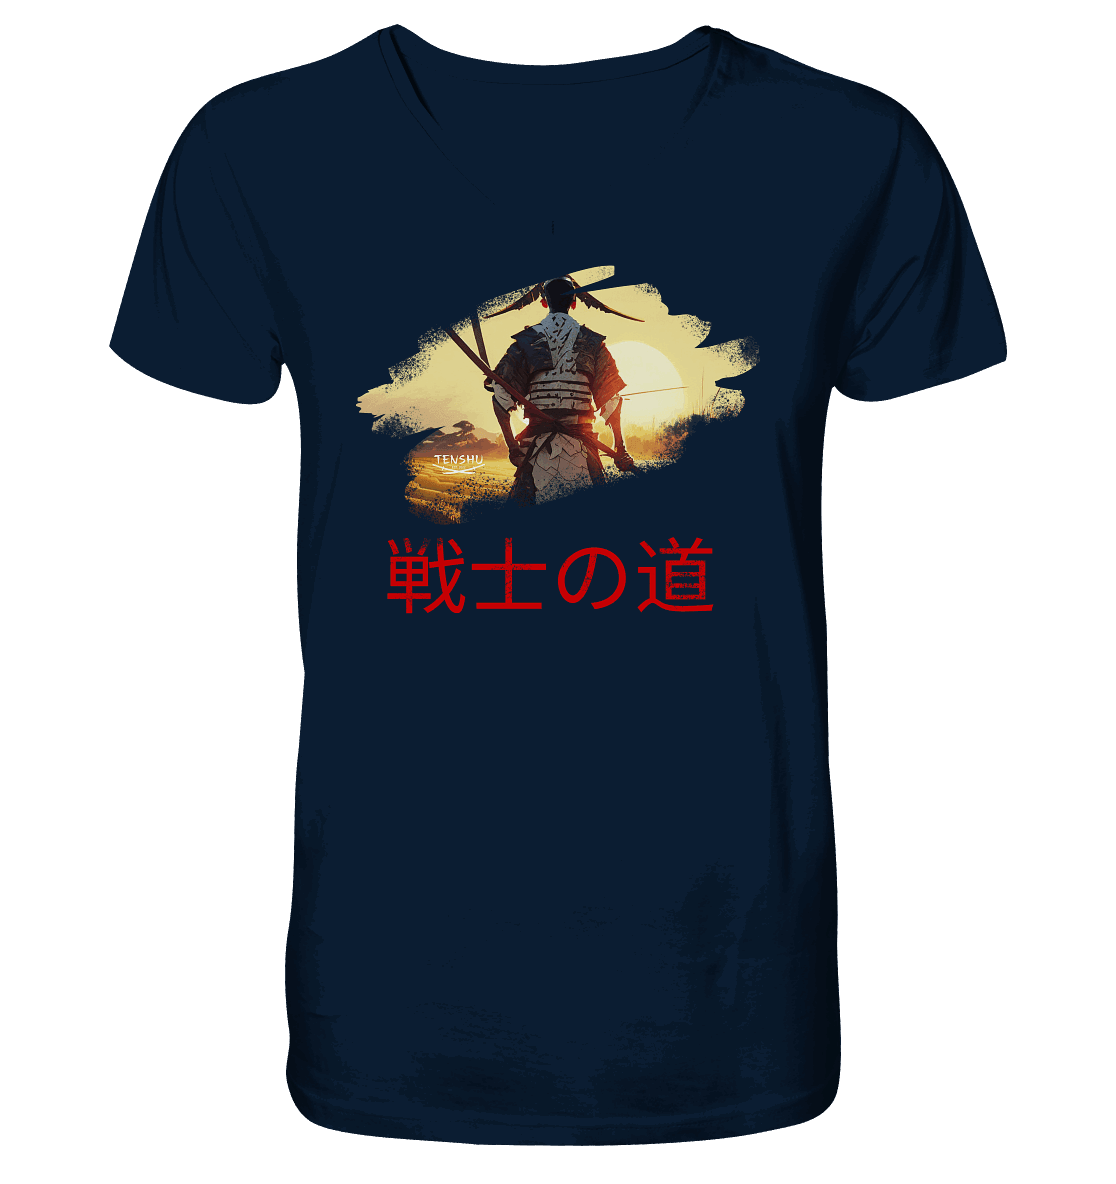 Tenshu / Der Weg des Kriegers - Mens Organic V-Neck Shirt